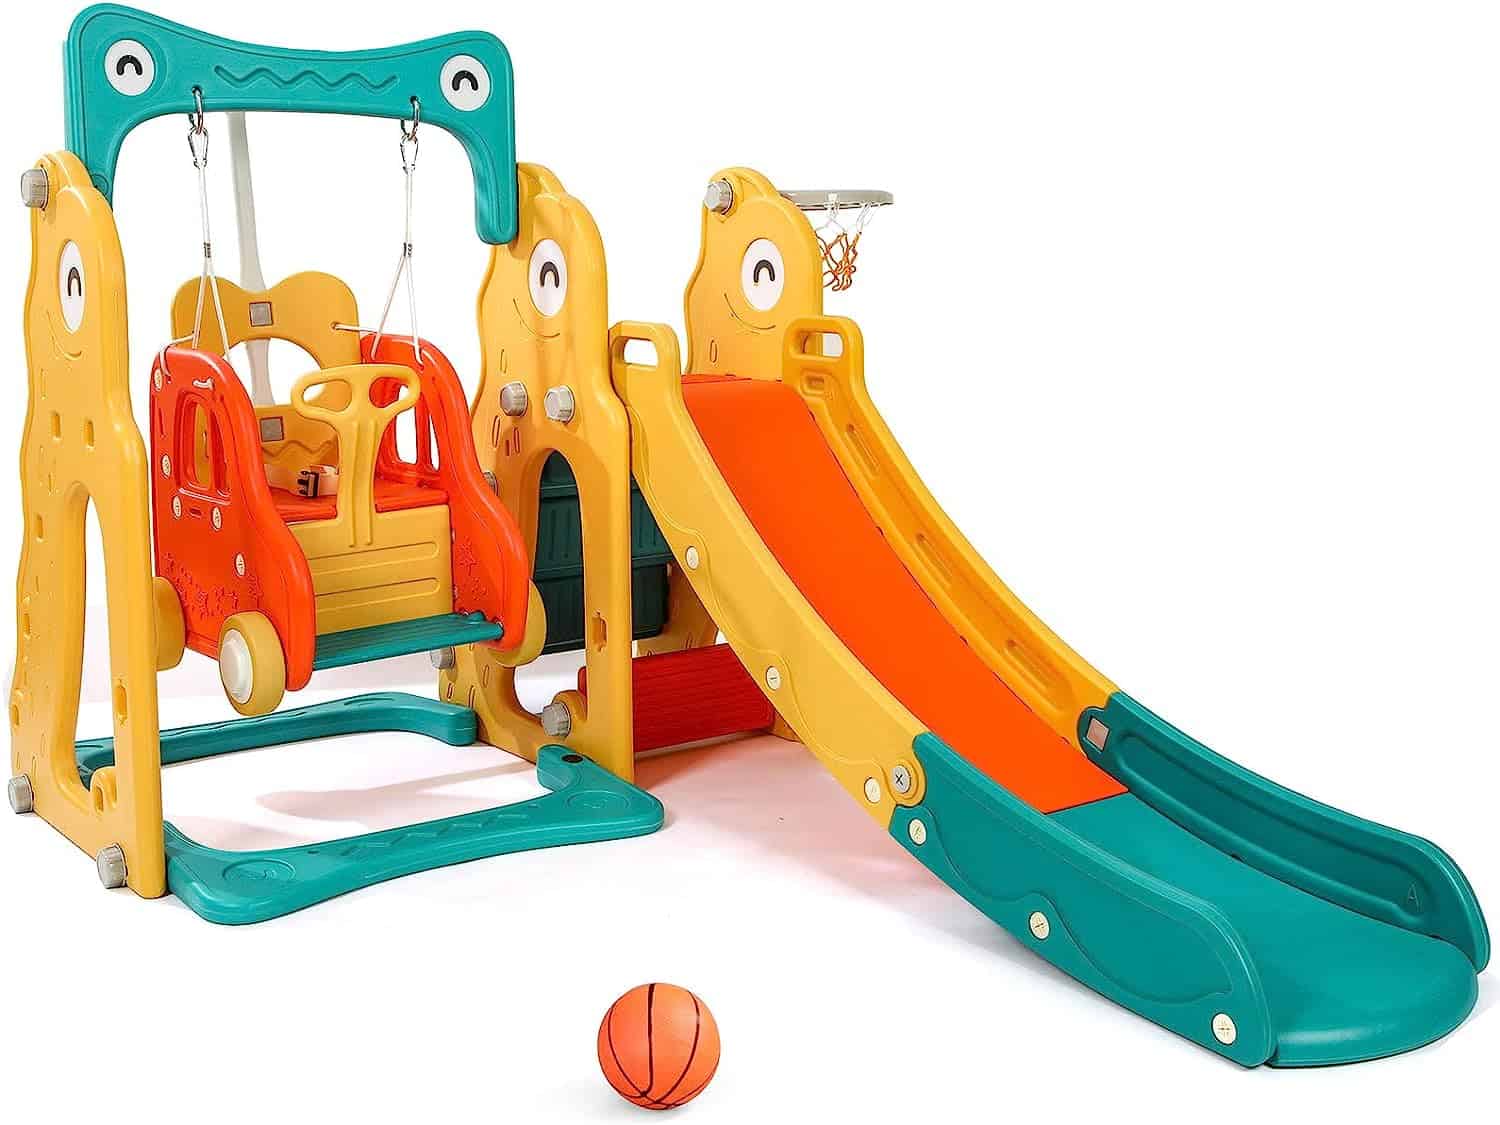 Aneken Toddler Slide and Swing Set